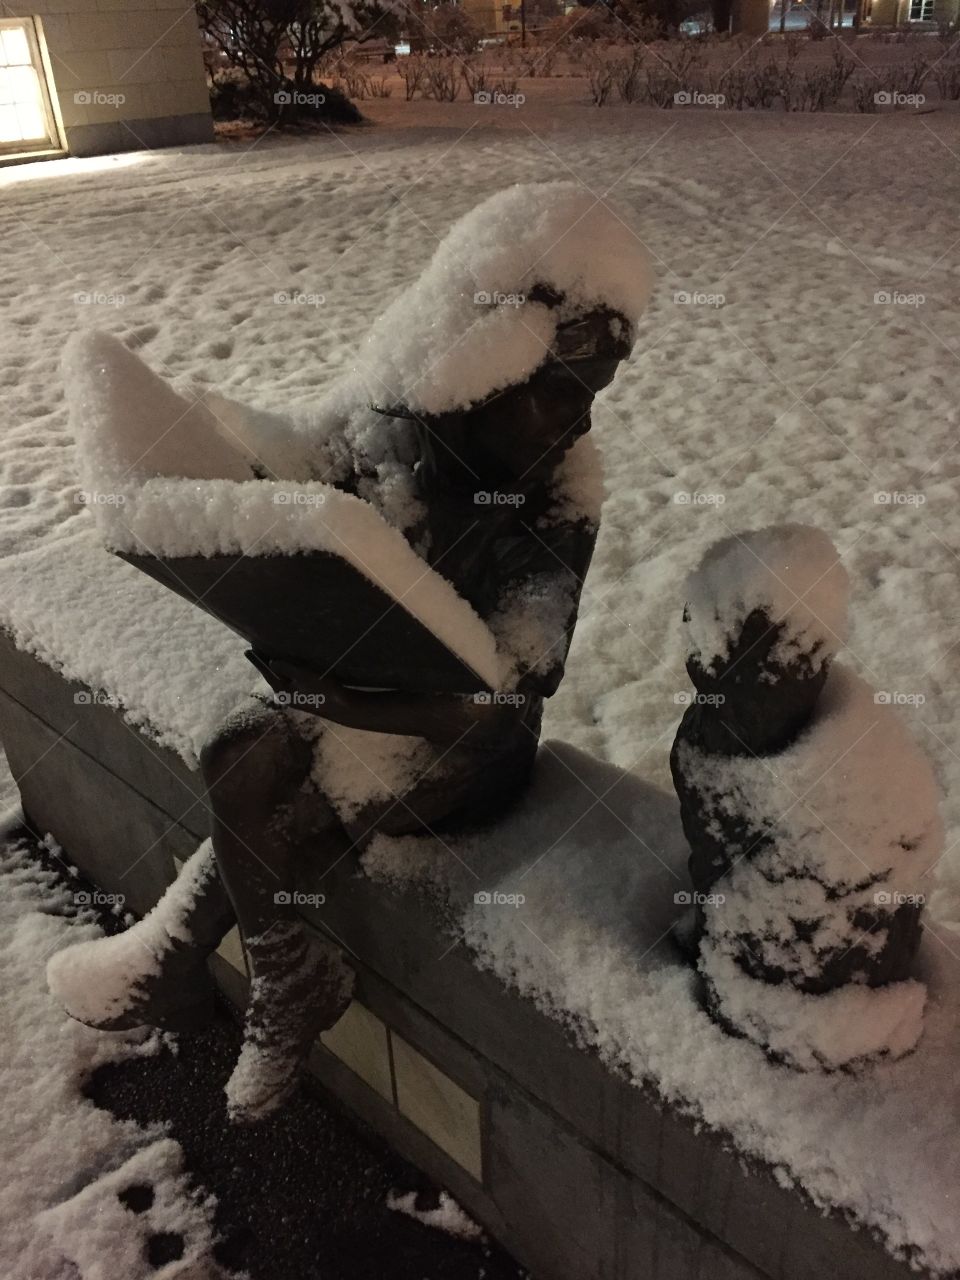 Snowy statues still reading